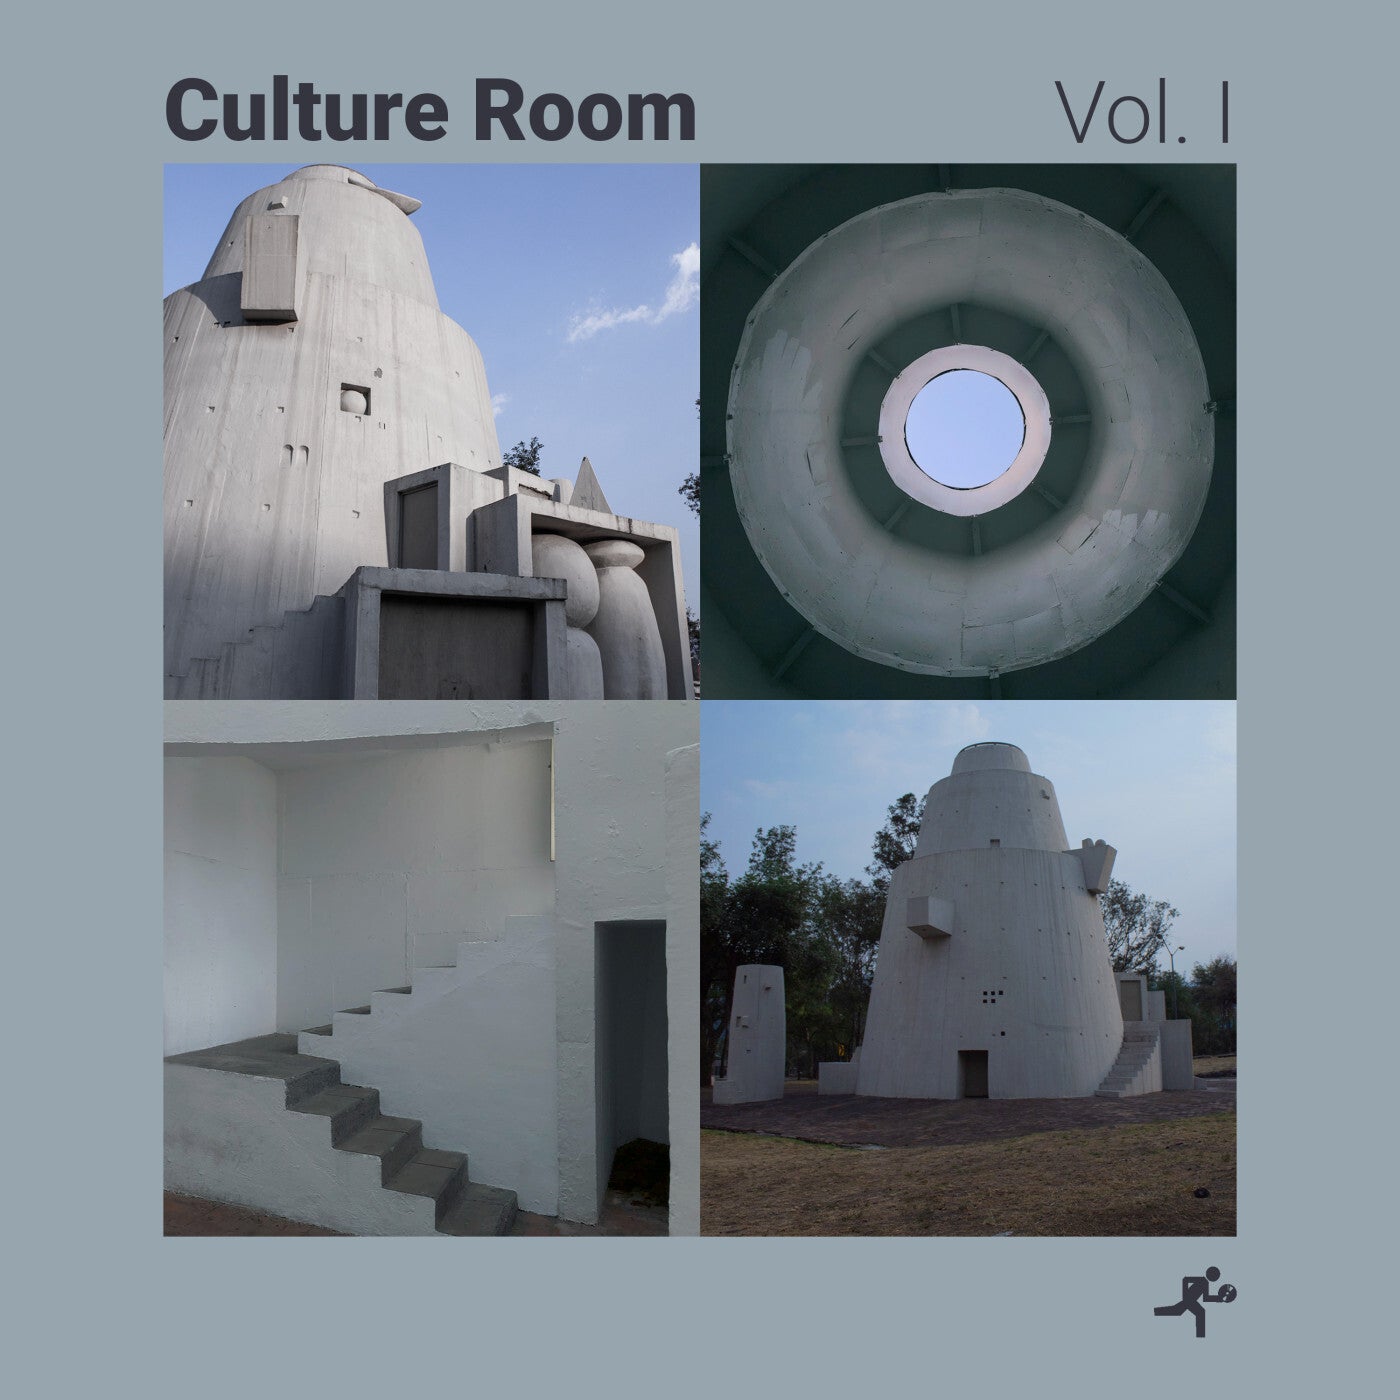 Culture Room Vol. l